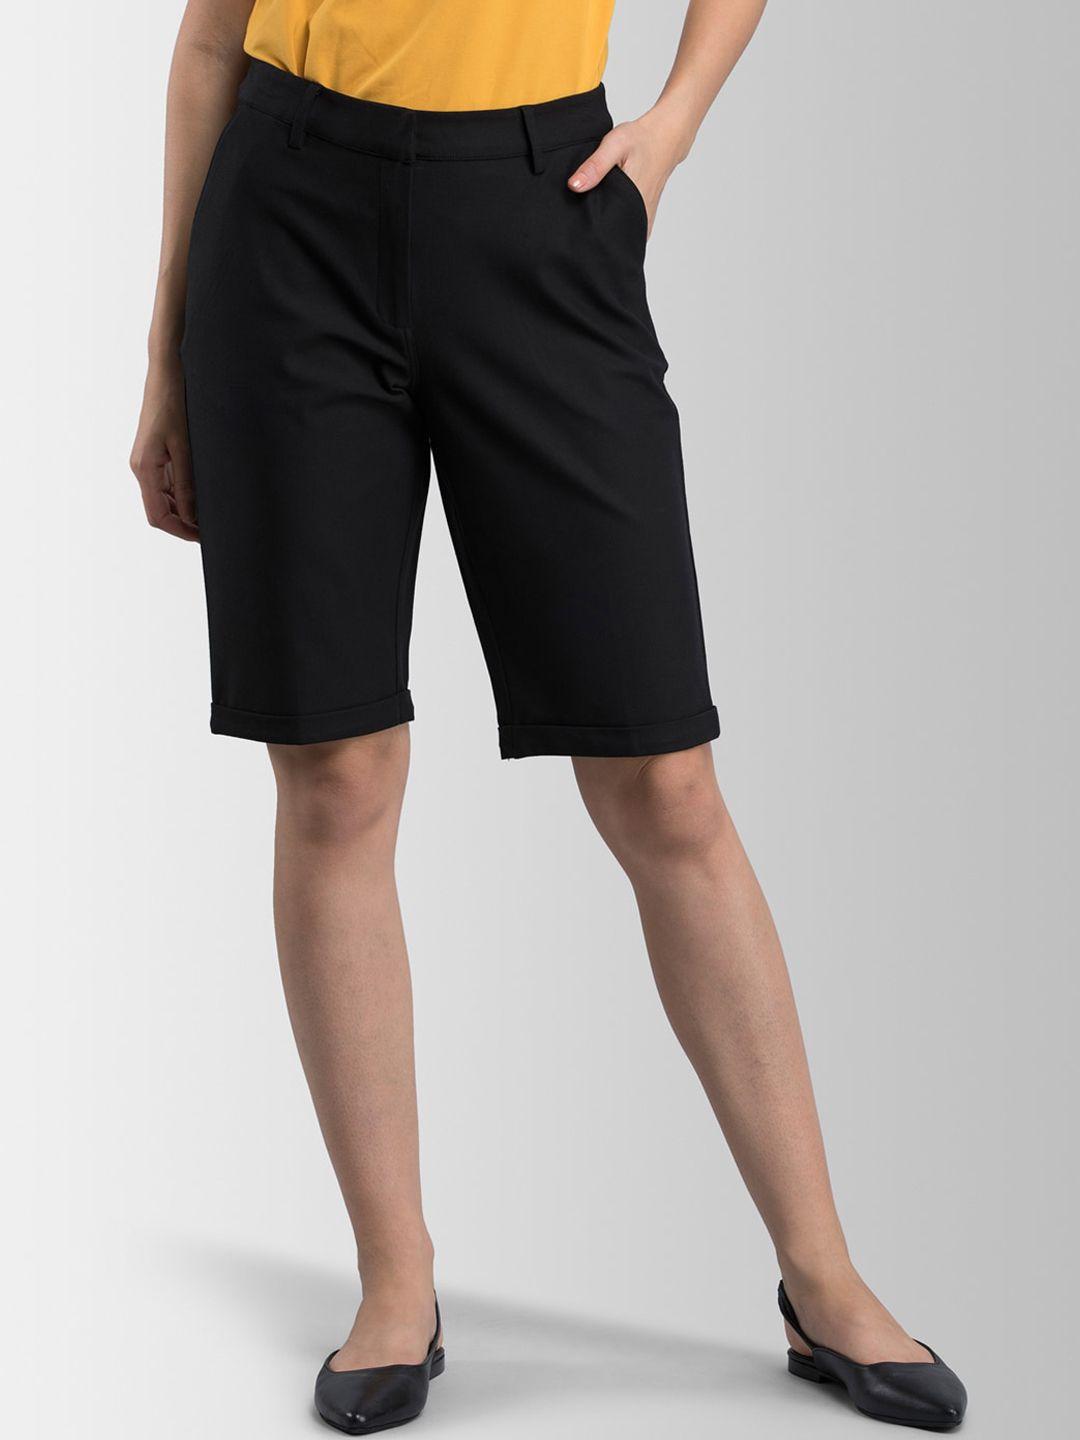 fablestreet-women-black-solid-regular-shorts